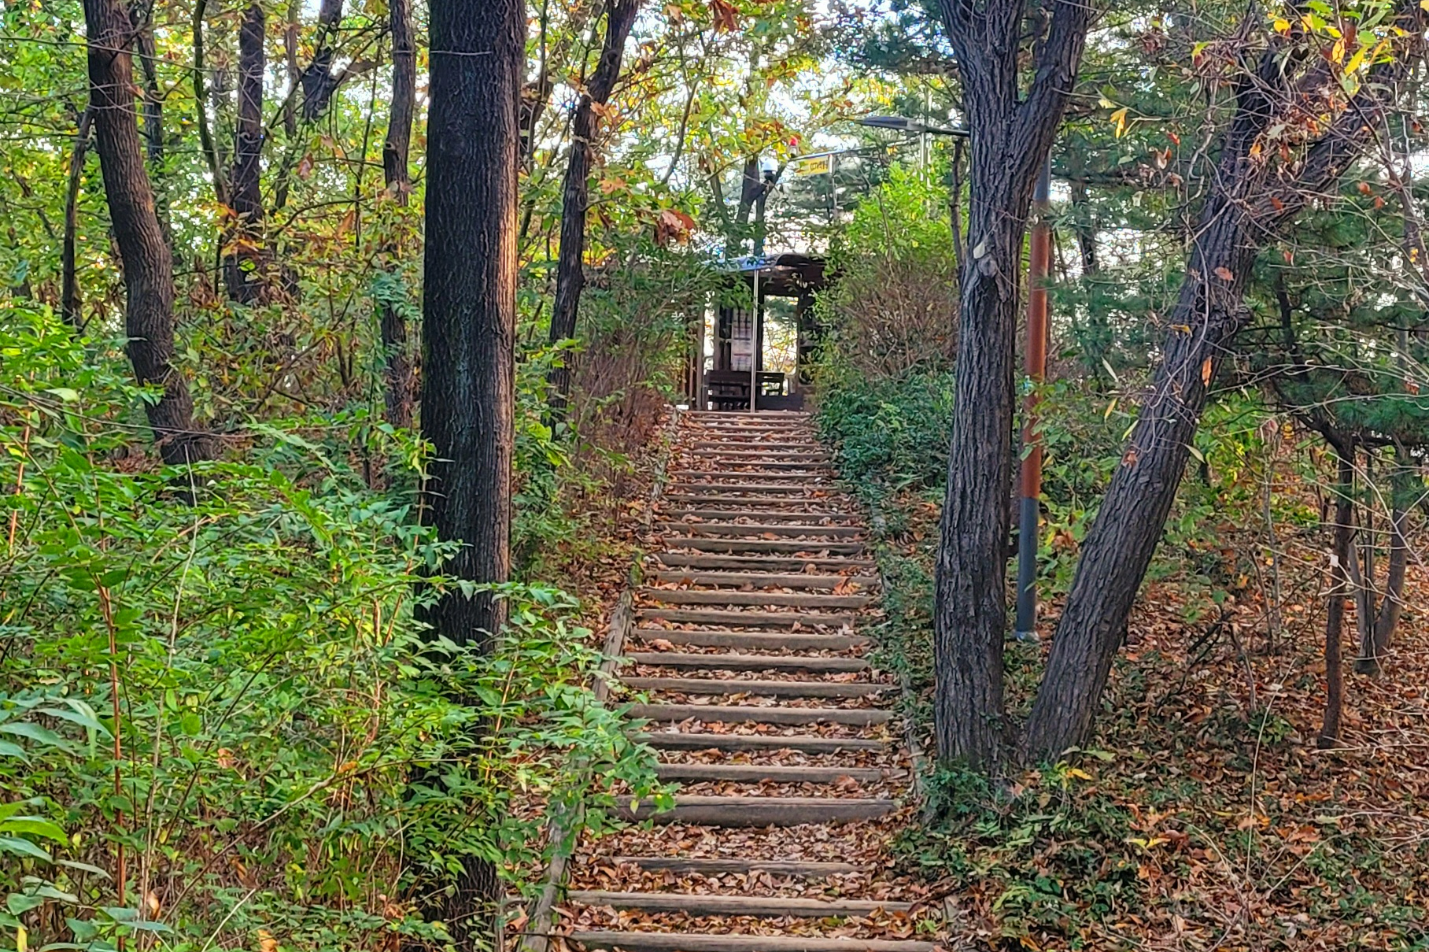 가을이면 숲 어디나 낙엽 밟는 감촉을 즐길 수 있다. 저 계단을 밟고 올라가면 숲속의 도서관이 있다. 독서를 유혹하는 문화시설인데 찾는 사람이 많지 않아 섭섭하다!